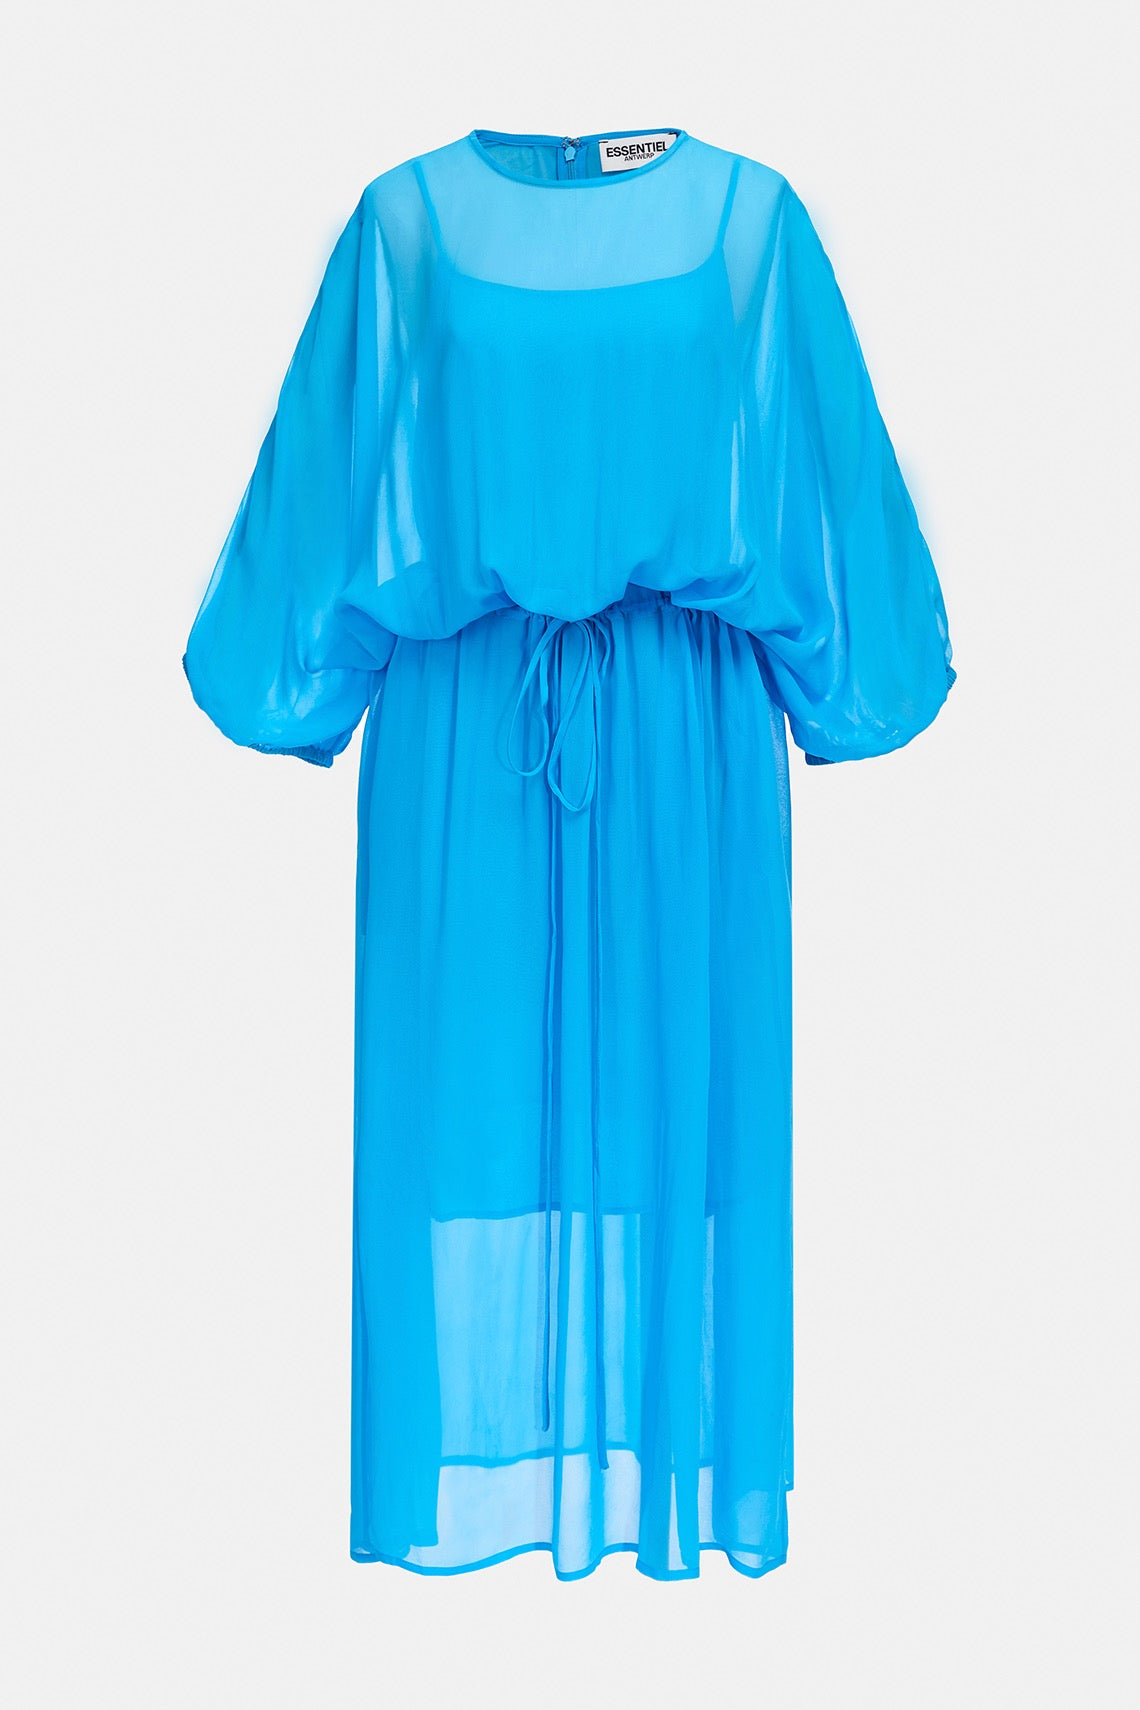 Essentiel Antwerp- Bilver Puff Sleeve Dress: Blue